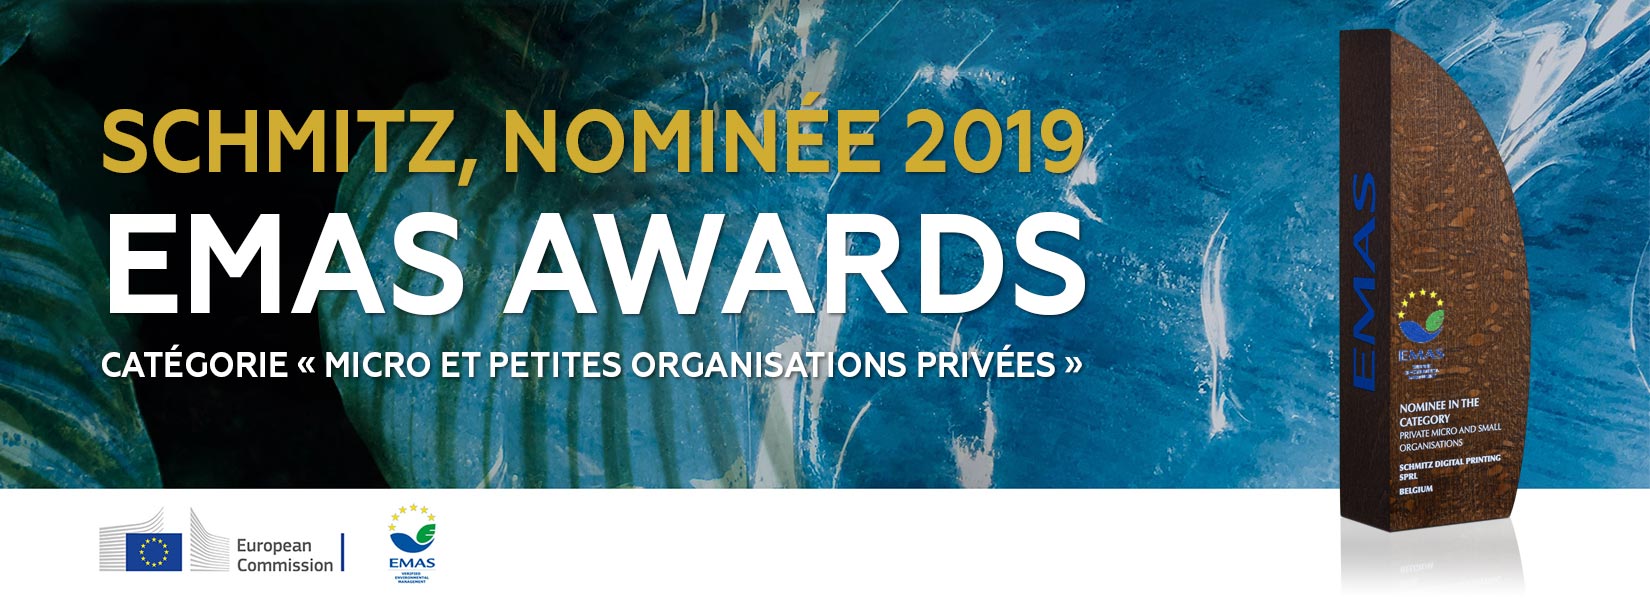 Emas Awards - Schmitz Digital Printing nominée 2019 - Micro et petites organisations privées